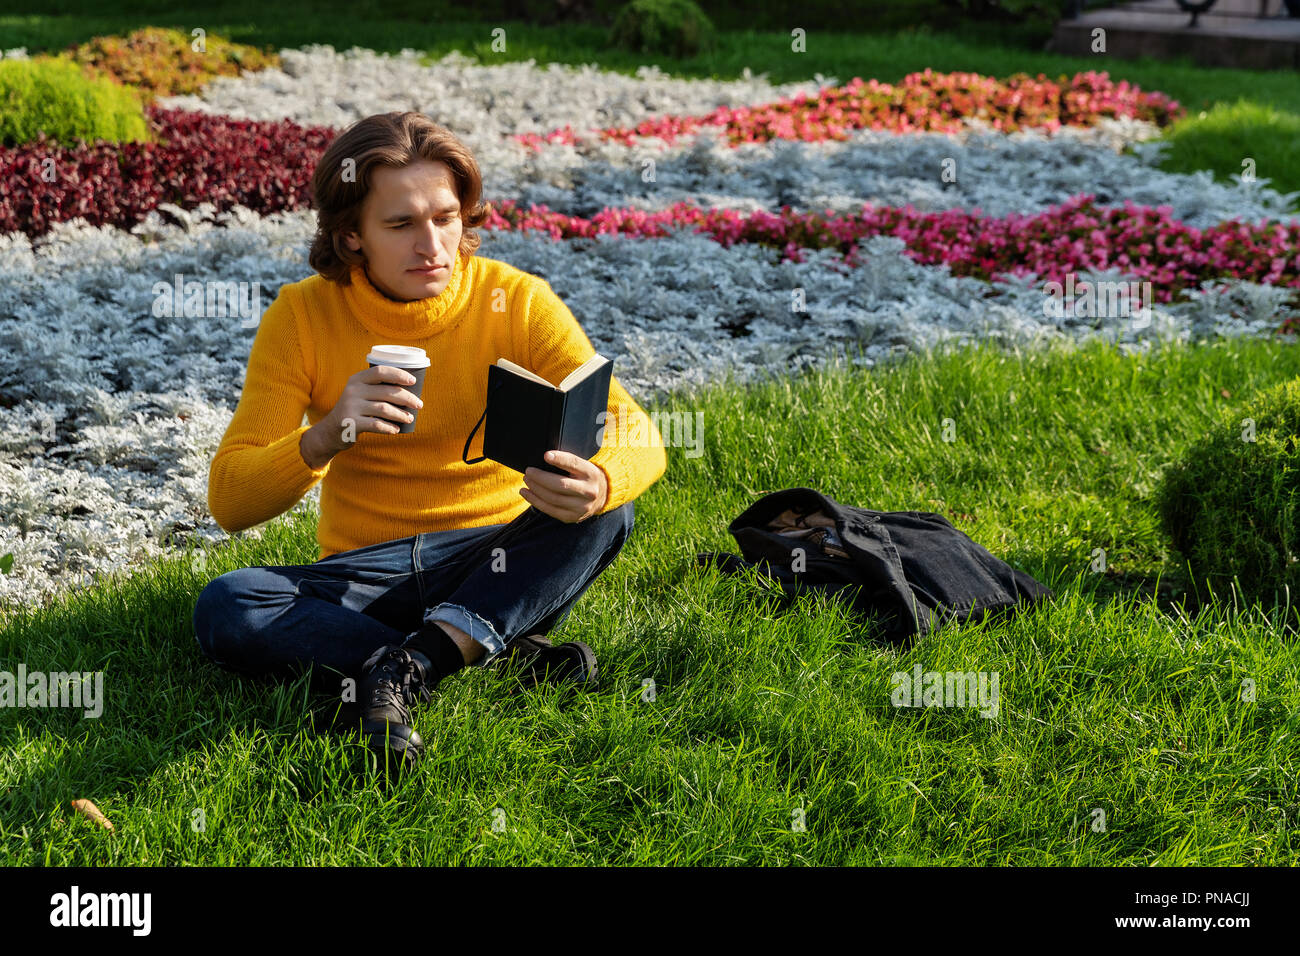 Le jeune homme boit du café et lit le livre dans le parc, il sourit, a un reste, est vêtu d'un chandail jaune, une veste imperméable ou noir, jeans Banque D'Images